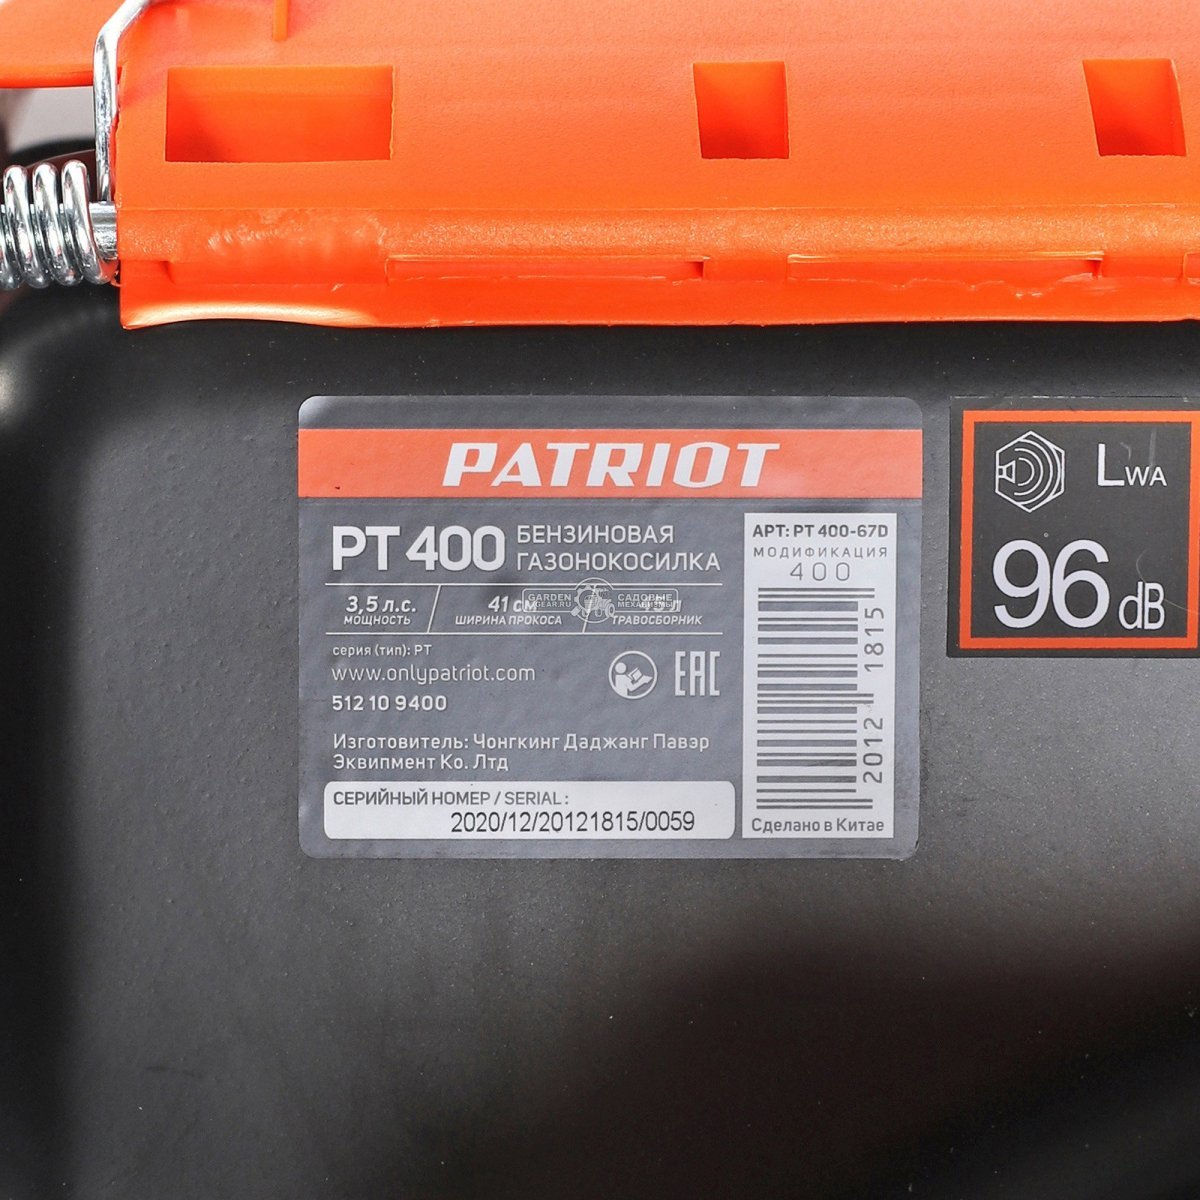 Газонокосилка бензиновая несамоходная Patriot PT 400 (PRC, 130 см3, Patriot, 41 см, сталь, 45 л, 19.2 кг)